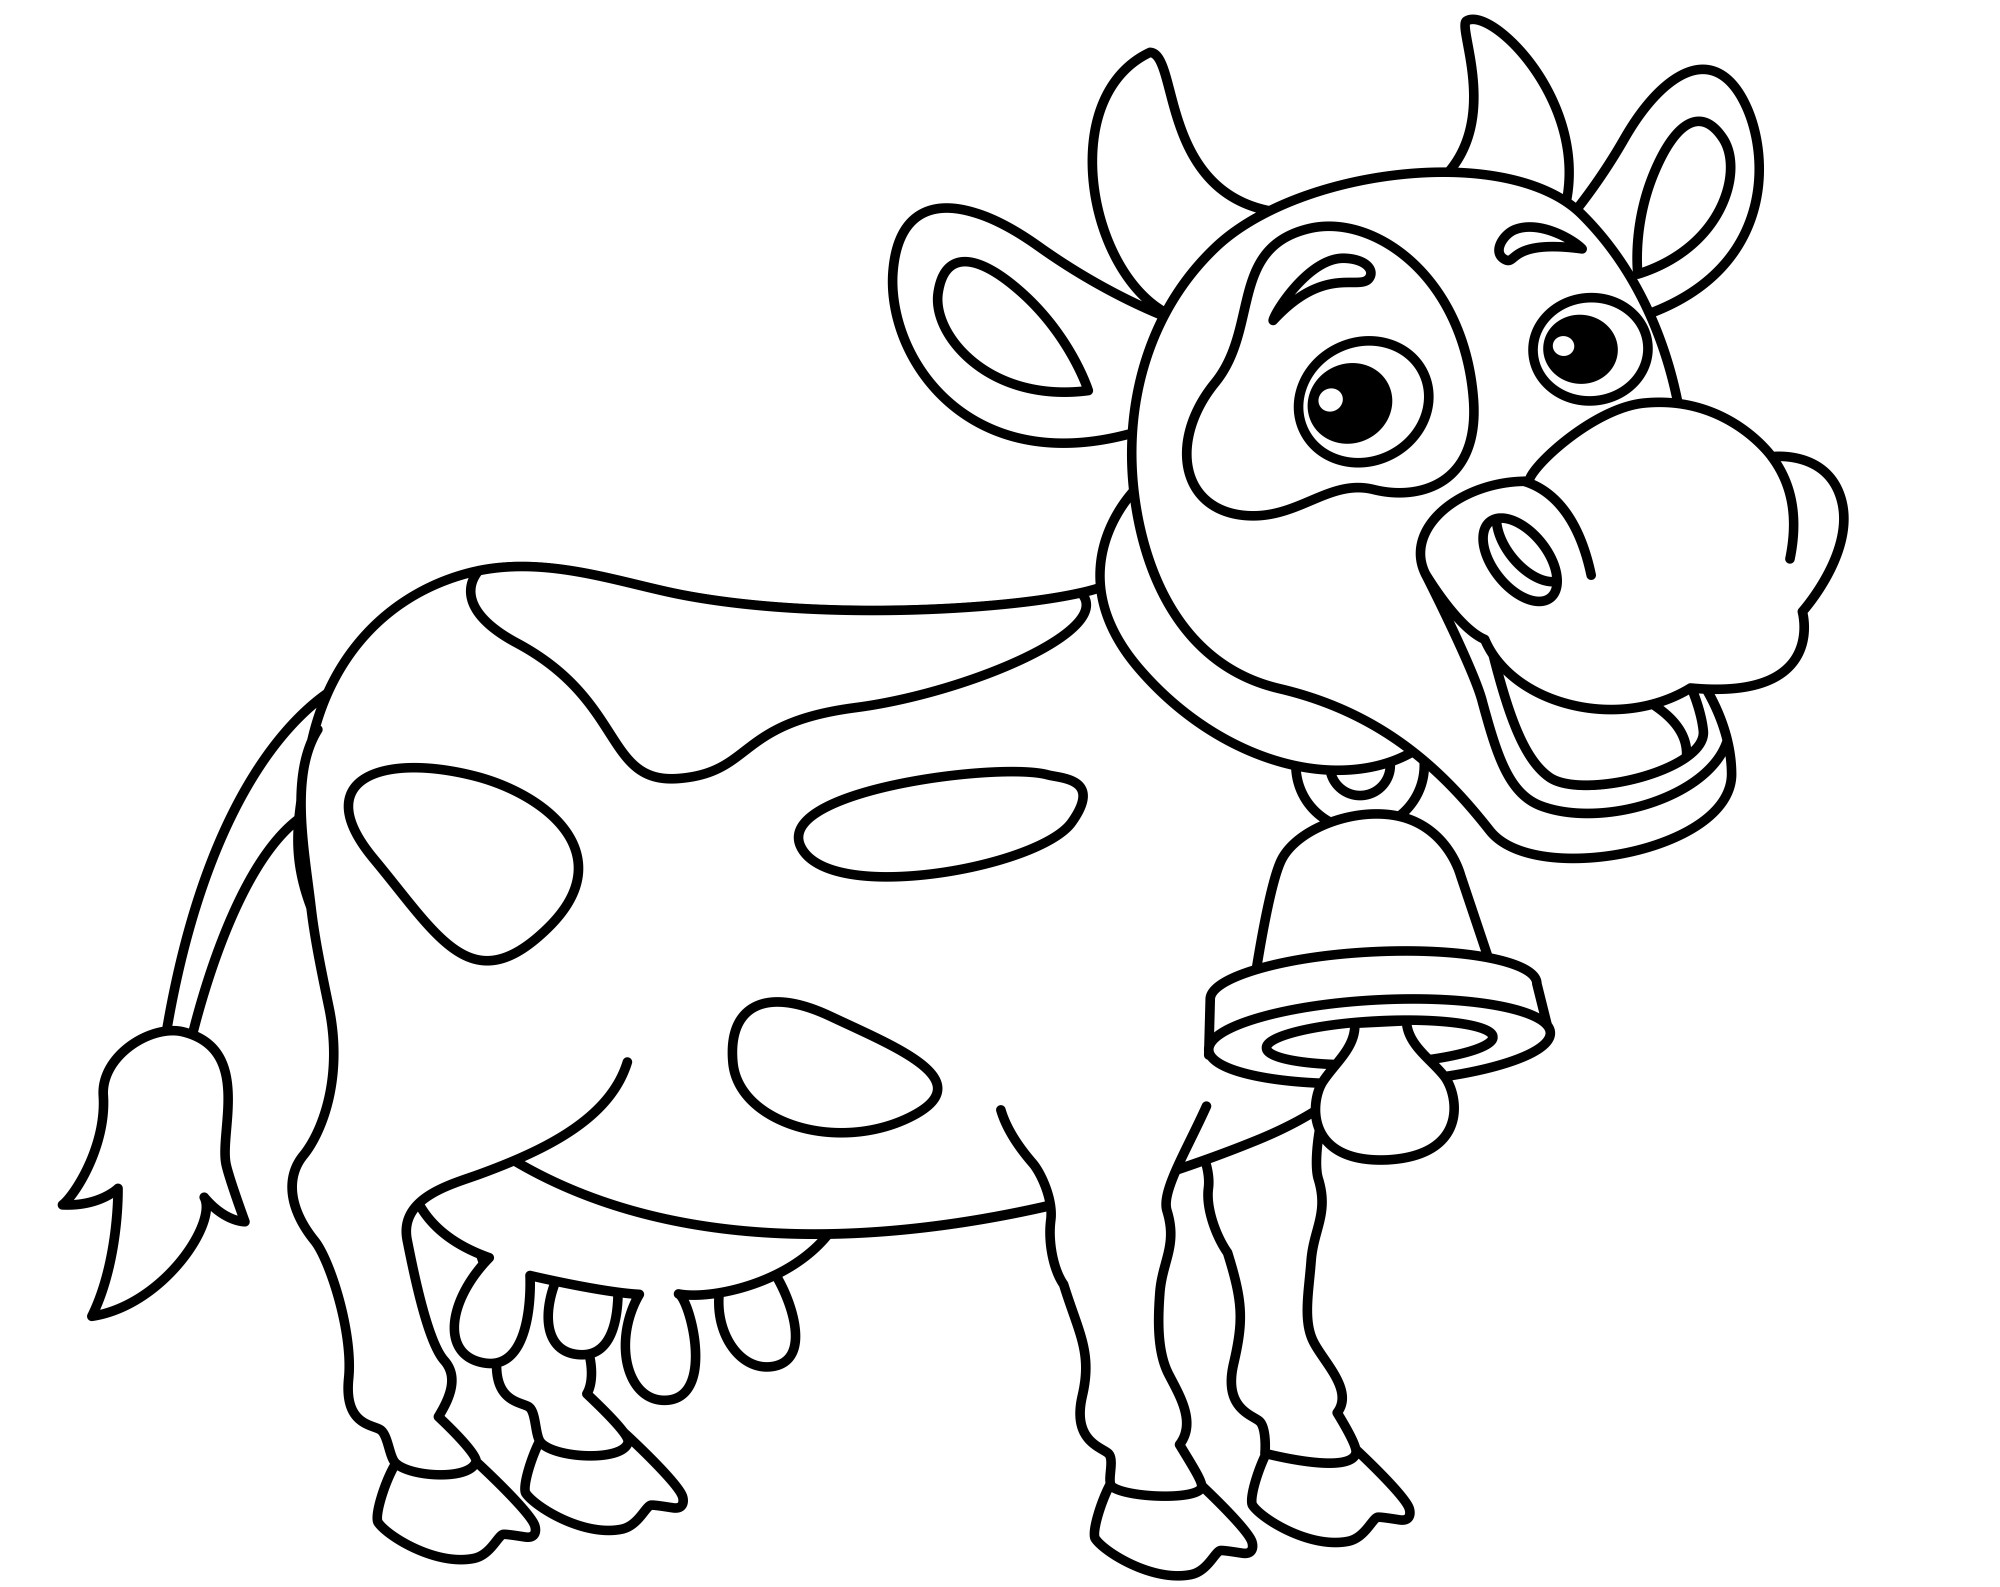 Раскраска для детей: веселая корова с большим колокольчиком на шее